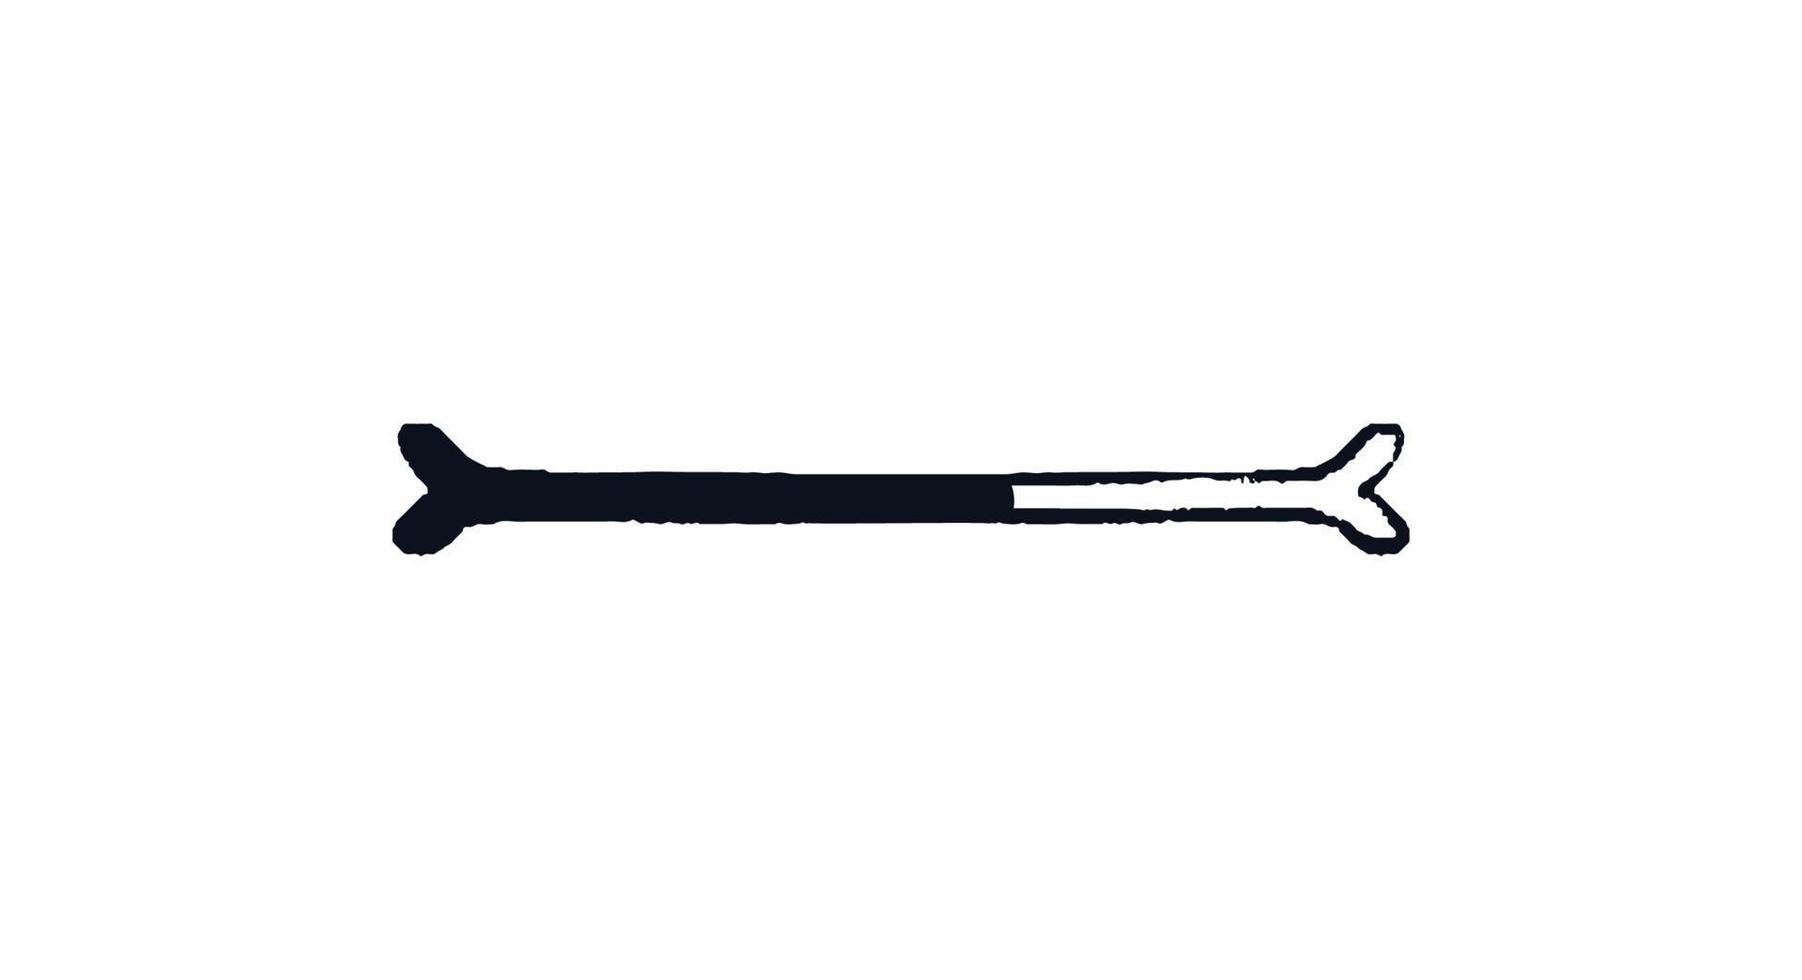 Doodle bone loading bar. Progress bar bone with download indicator. Vector stock illustration black on white sketch.